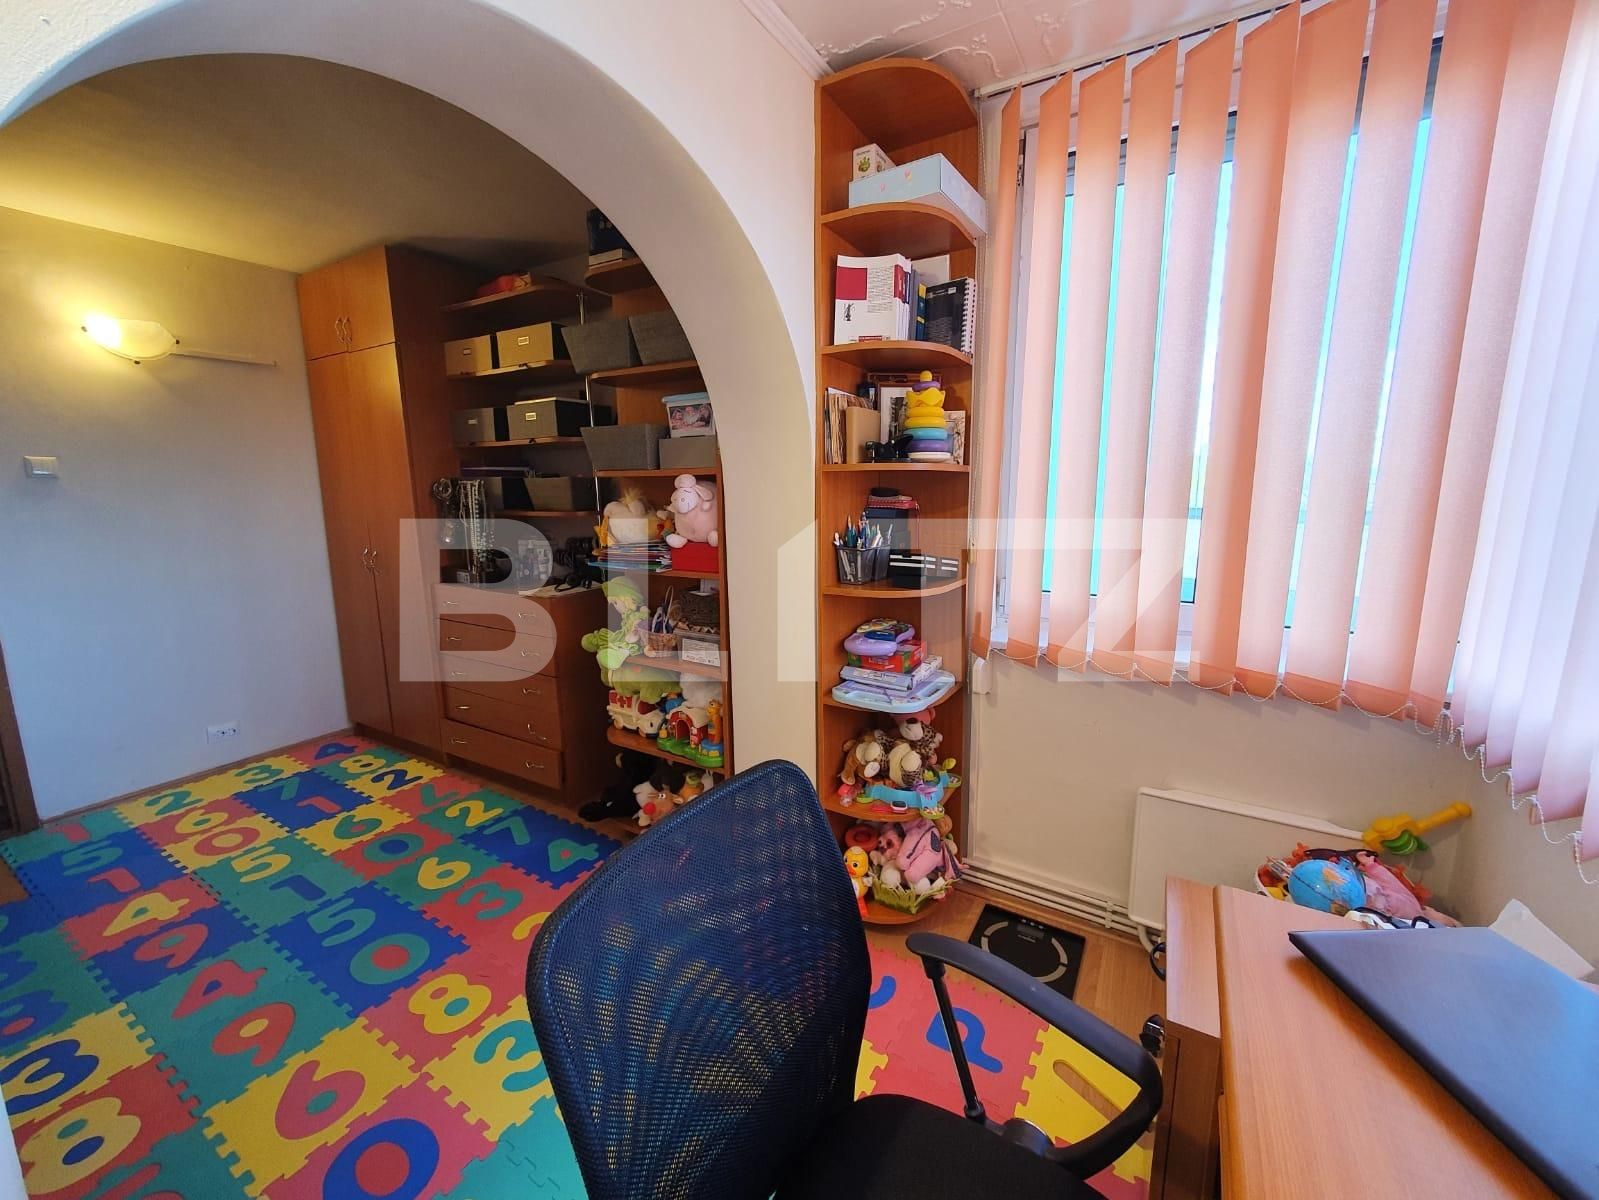 Apartament spațios cu 4 camere 90mp, Calea Bucuresti